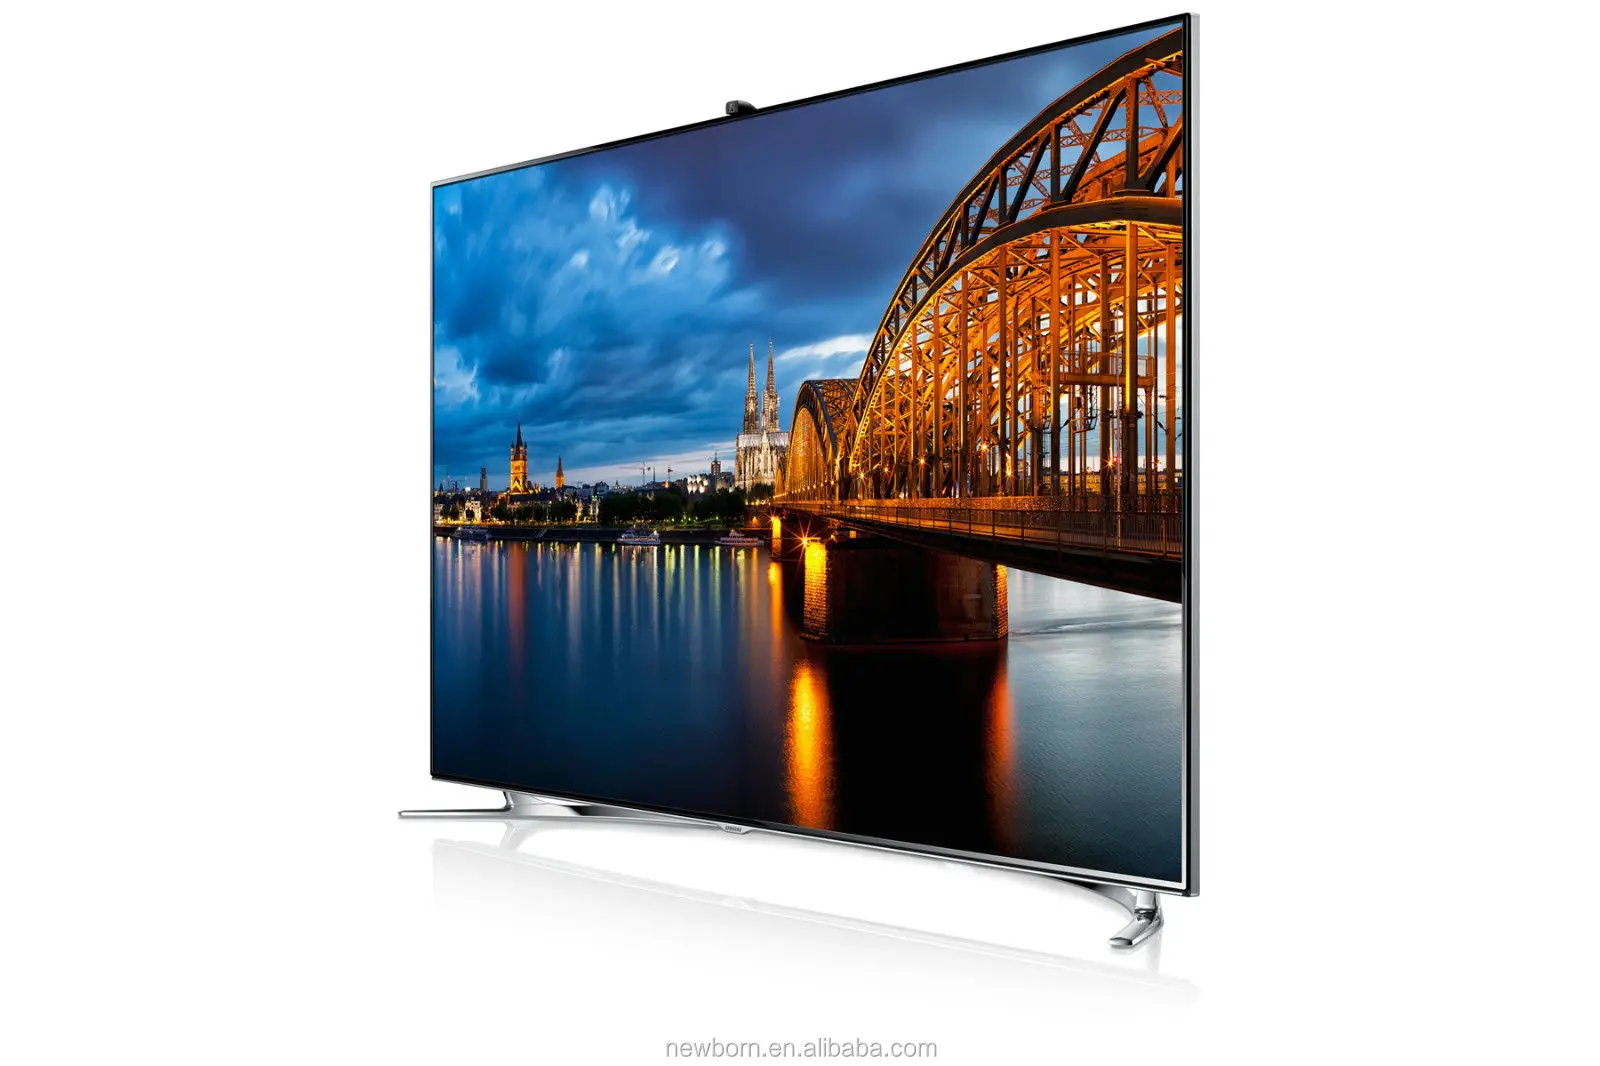 Телевизор samsung купить в спб. Samsung ue46f8000 led. Samsung f8000 55 телевизор. Samsung 40 f8000. Samsung led 55 Smart TV.